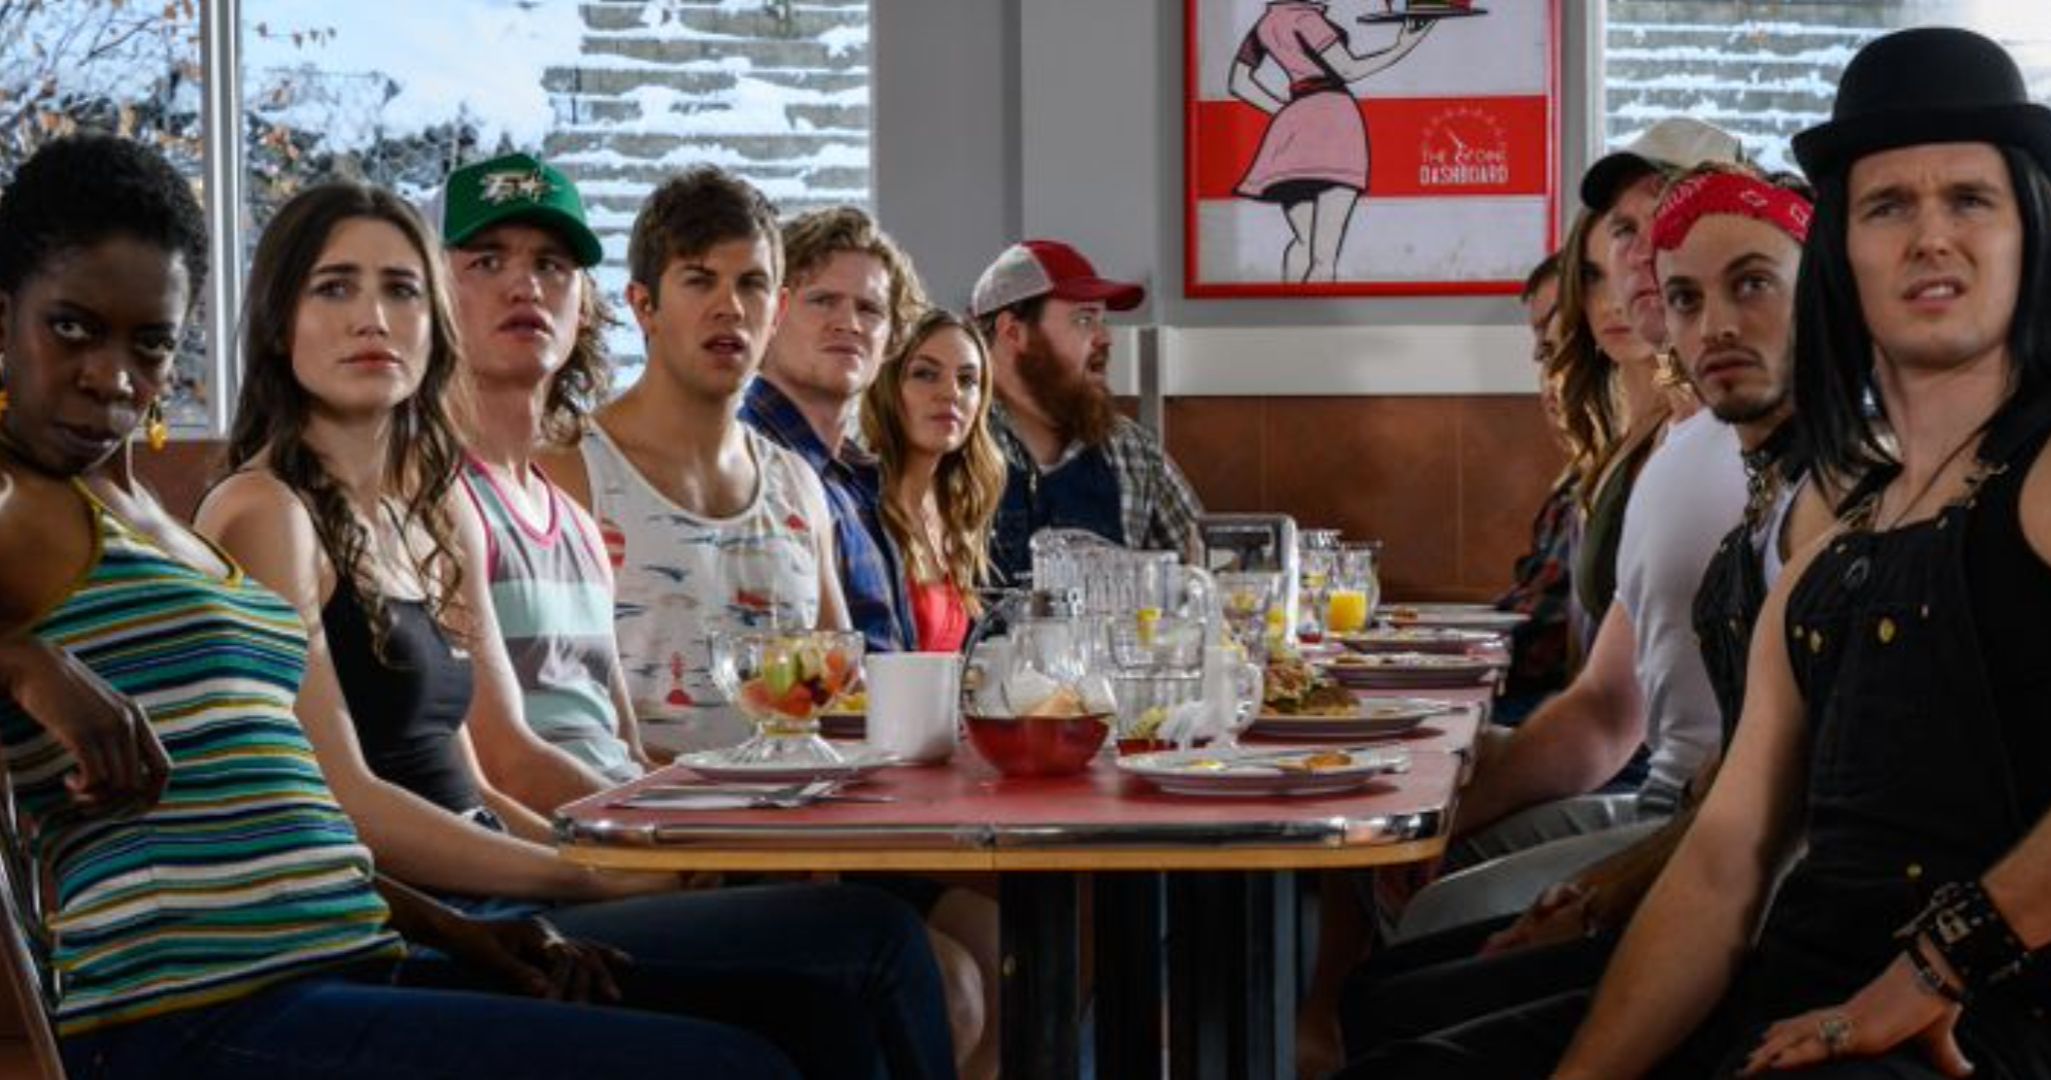 Letterkenny Season 9 Trailer Teases New Episodes Arriving on Hulu for